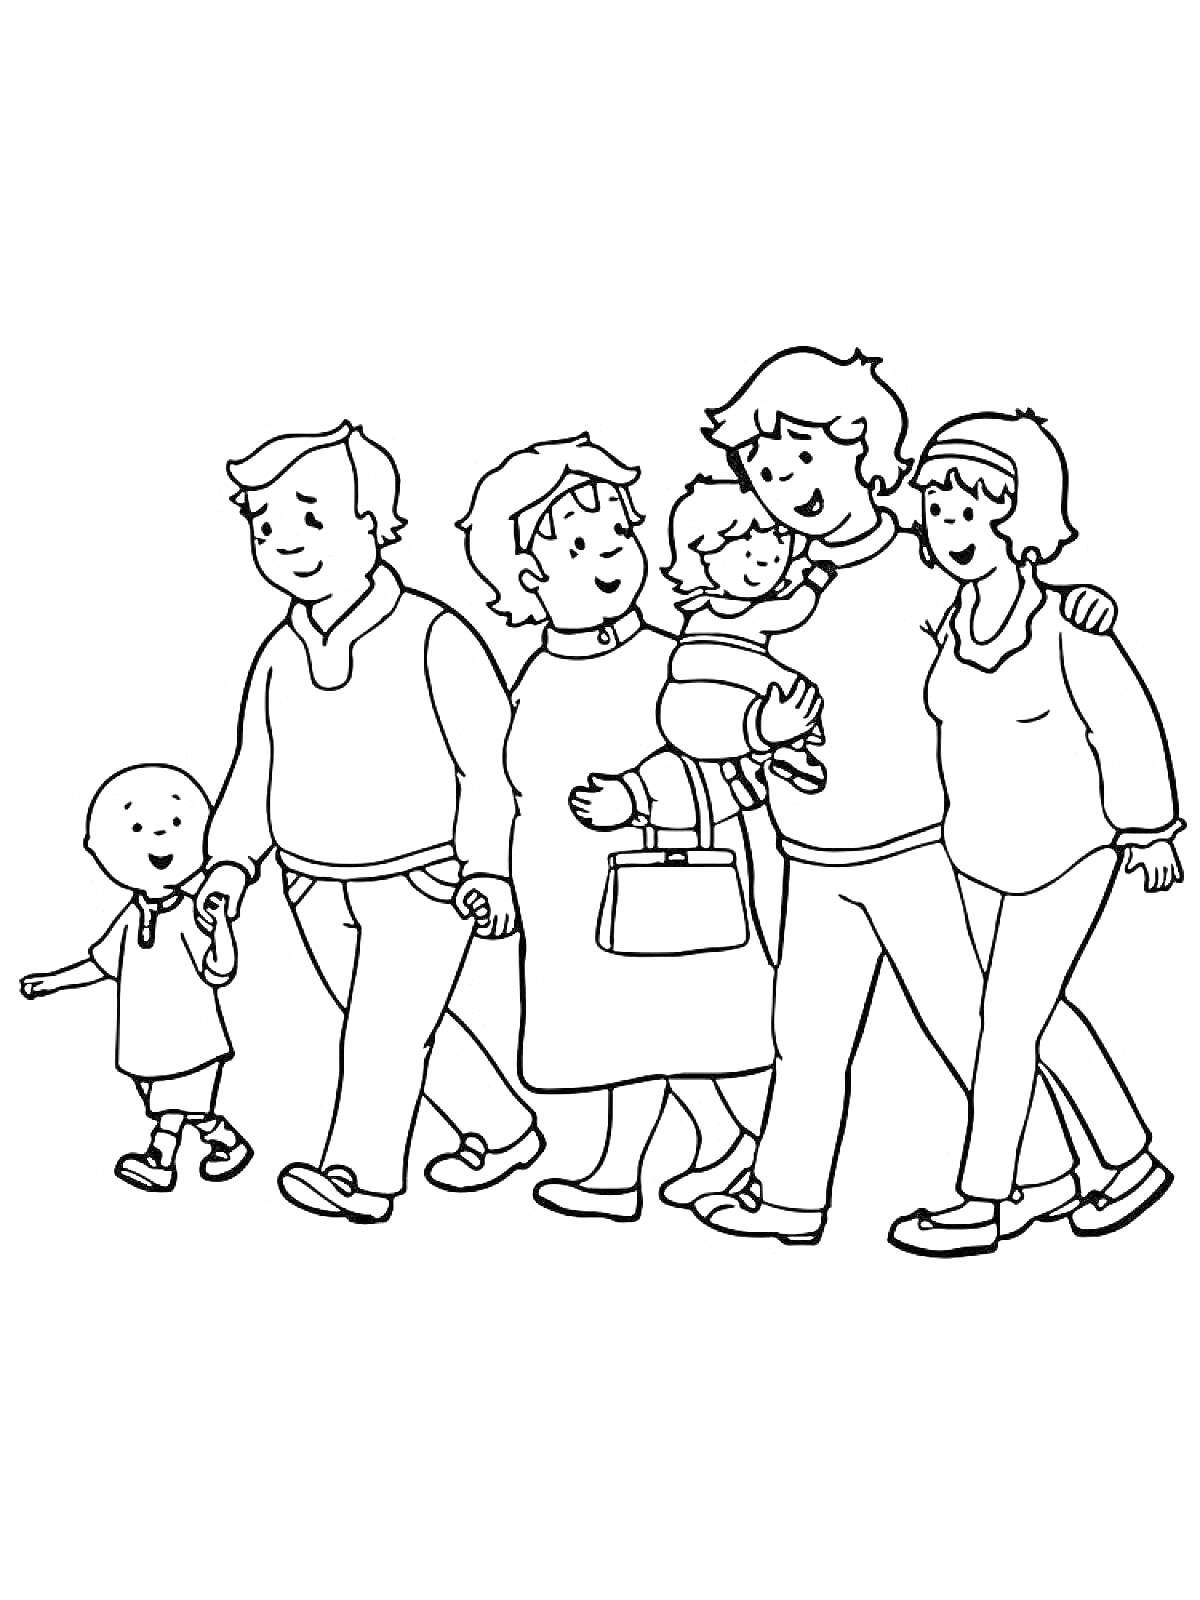 Раскраска Семья на прогулке: взрослые и дети идут вместе, держась за руки